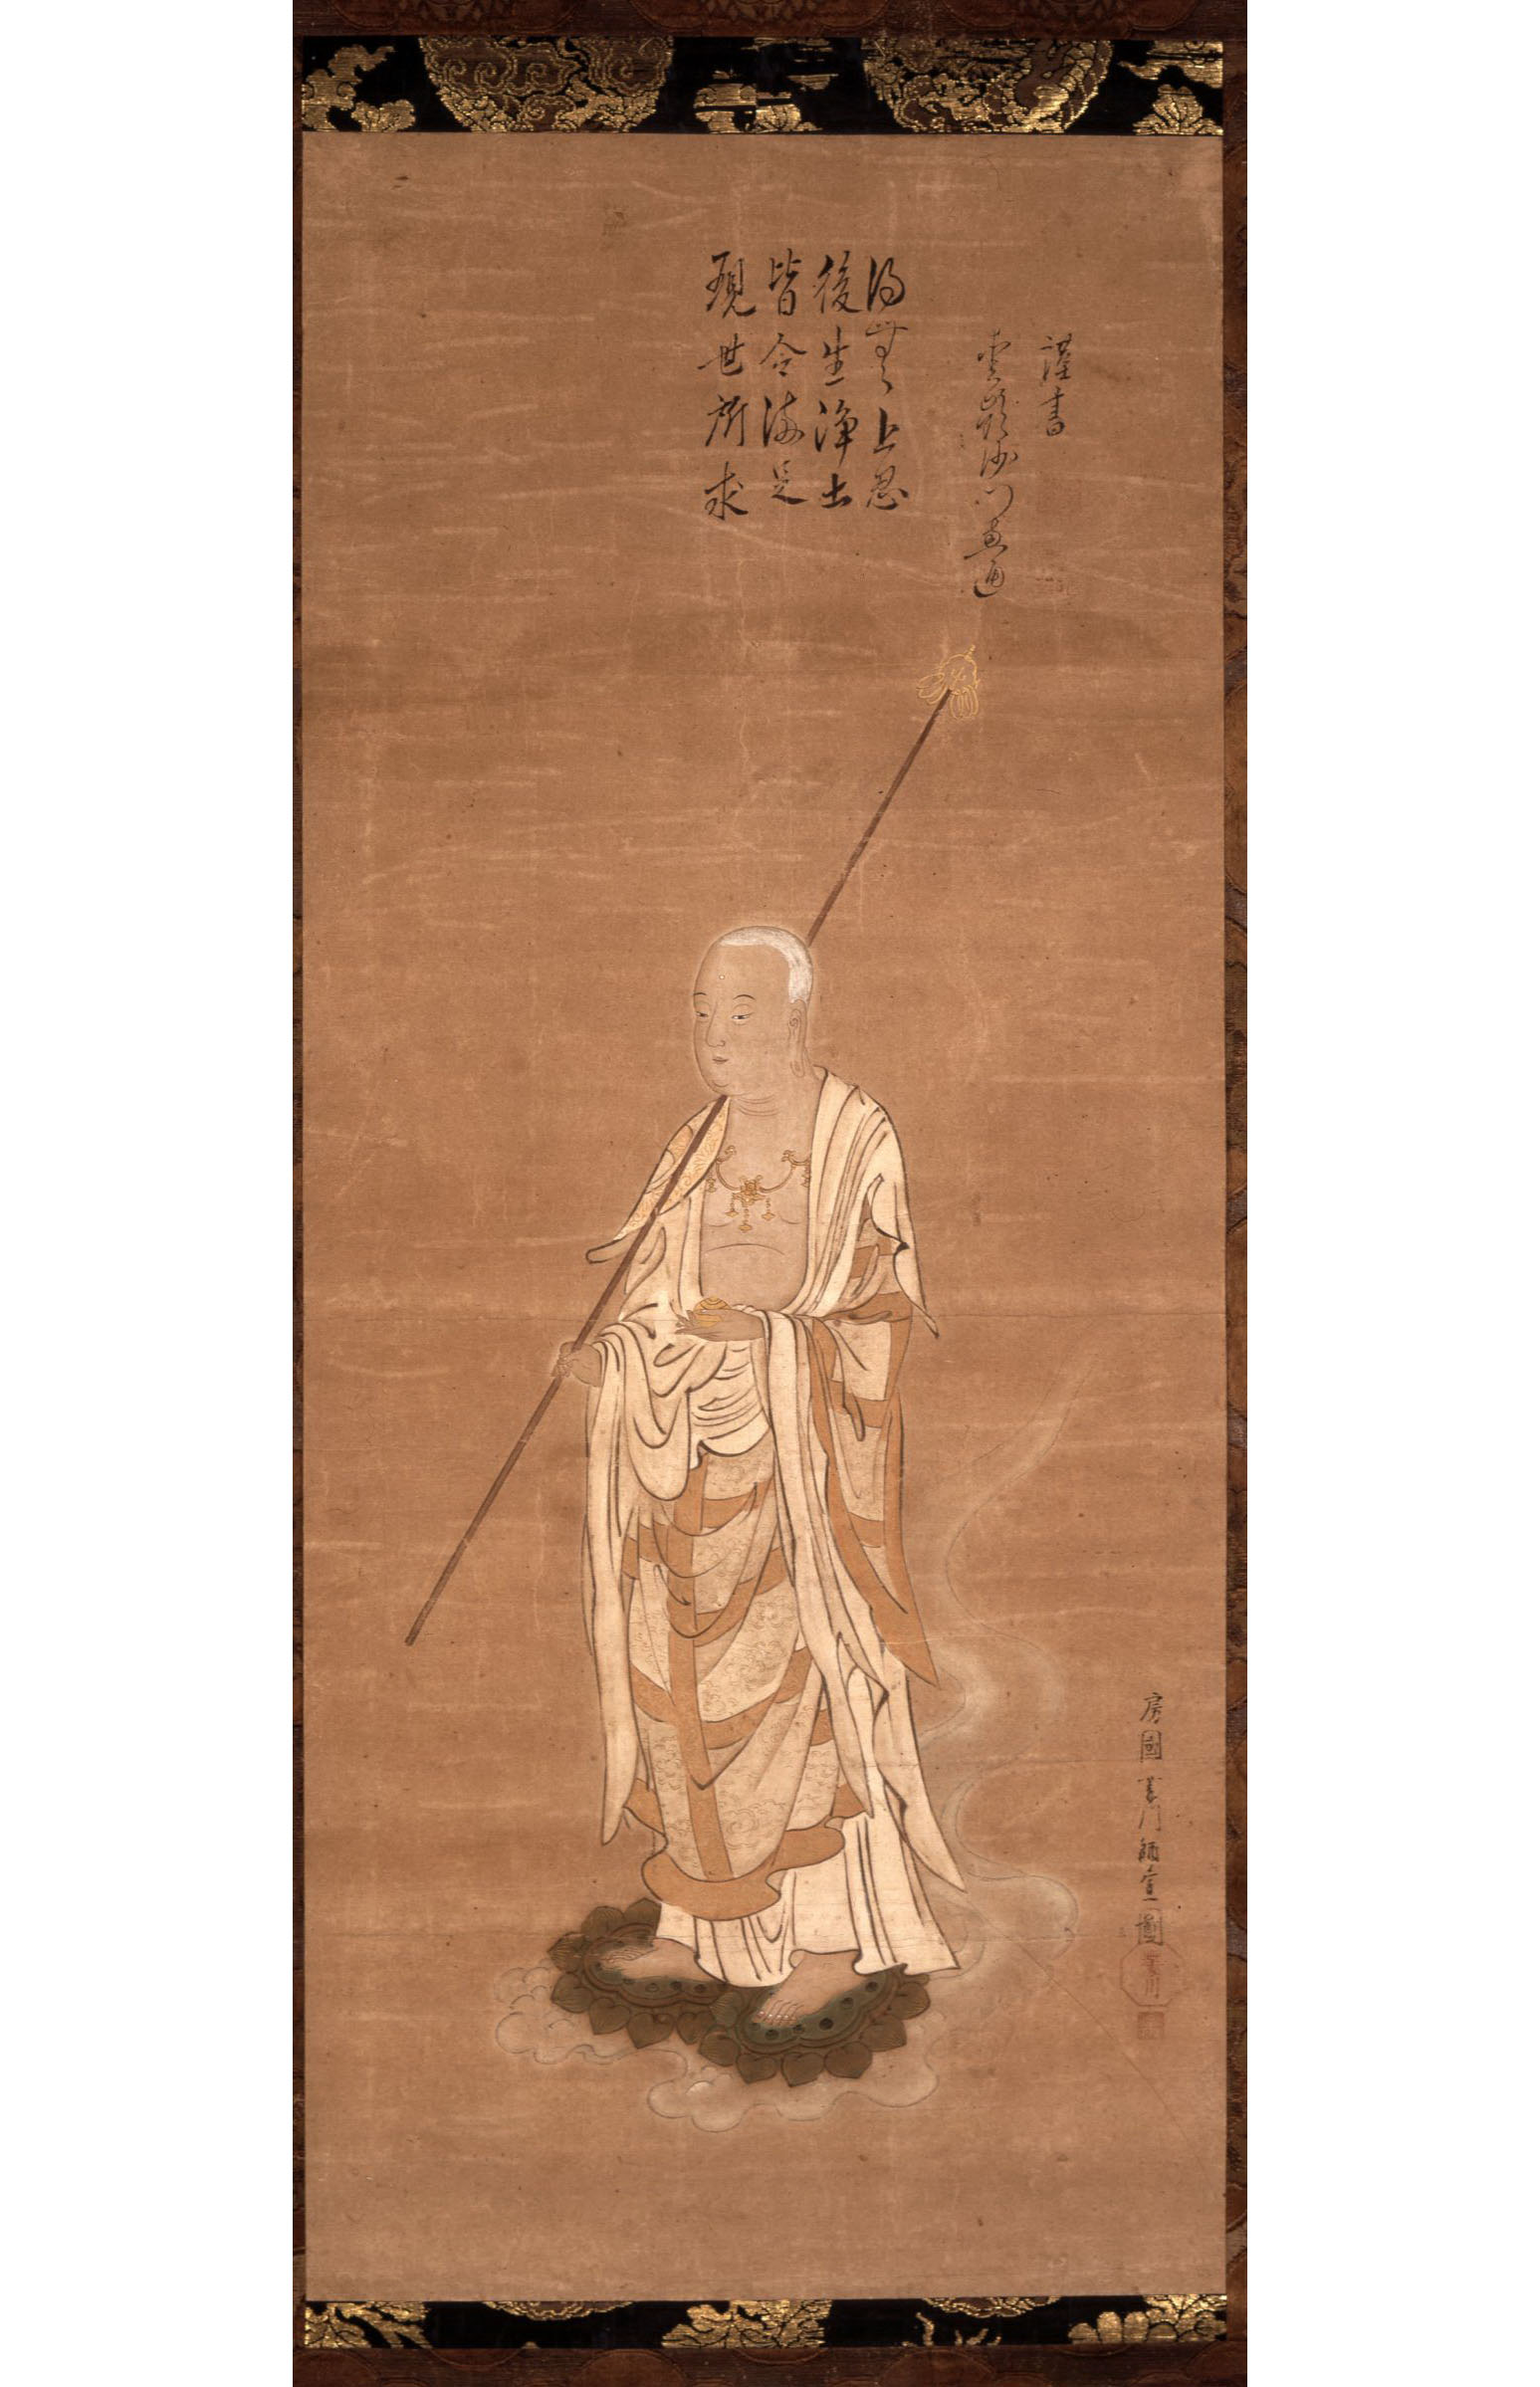 Моронобу Хисикава. "Бодхисаттва Дзидзо стоит в белых монашеских одеждах на двух лотосах, покоящихся на облаке". 1681-1686.